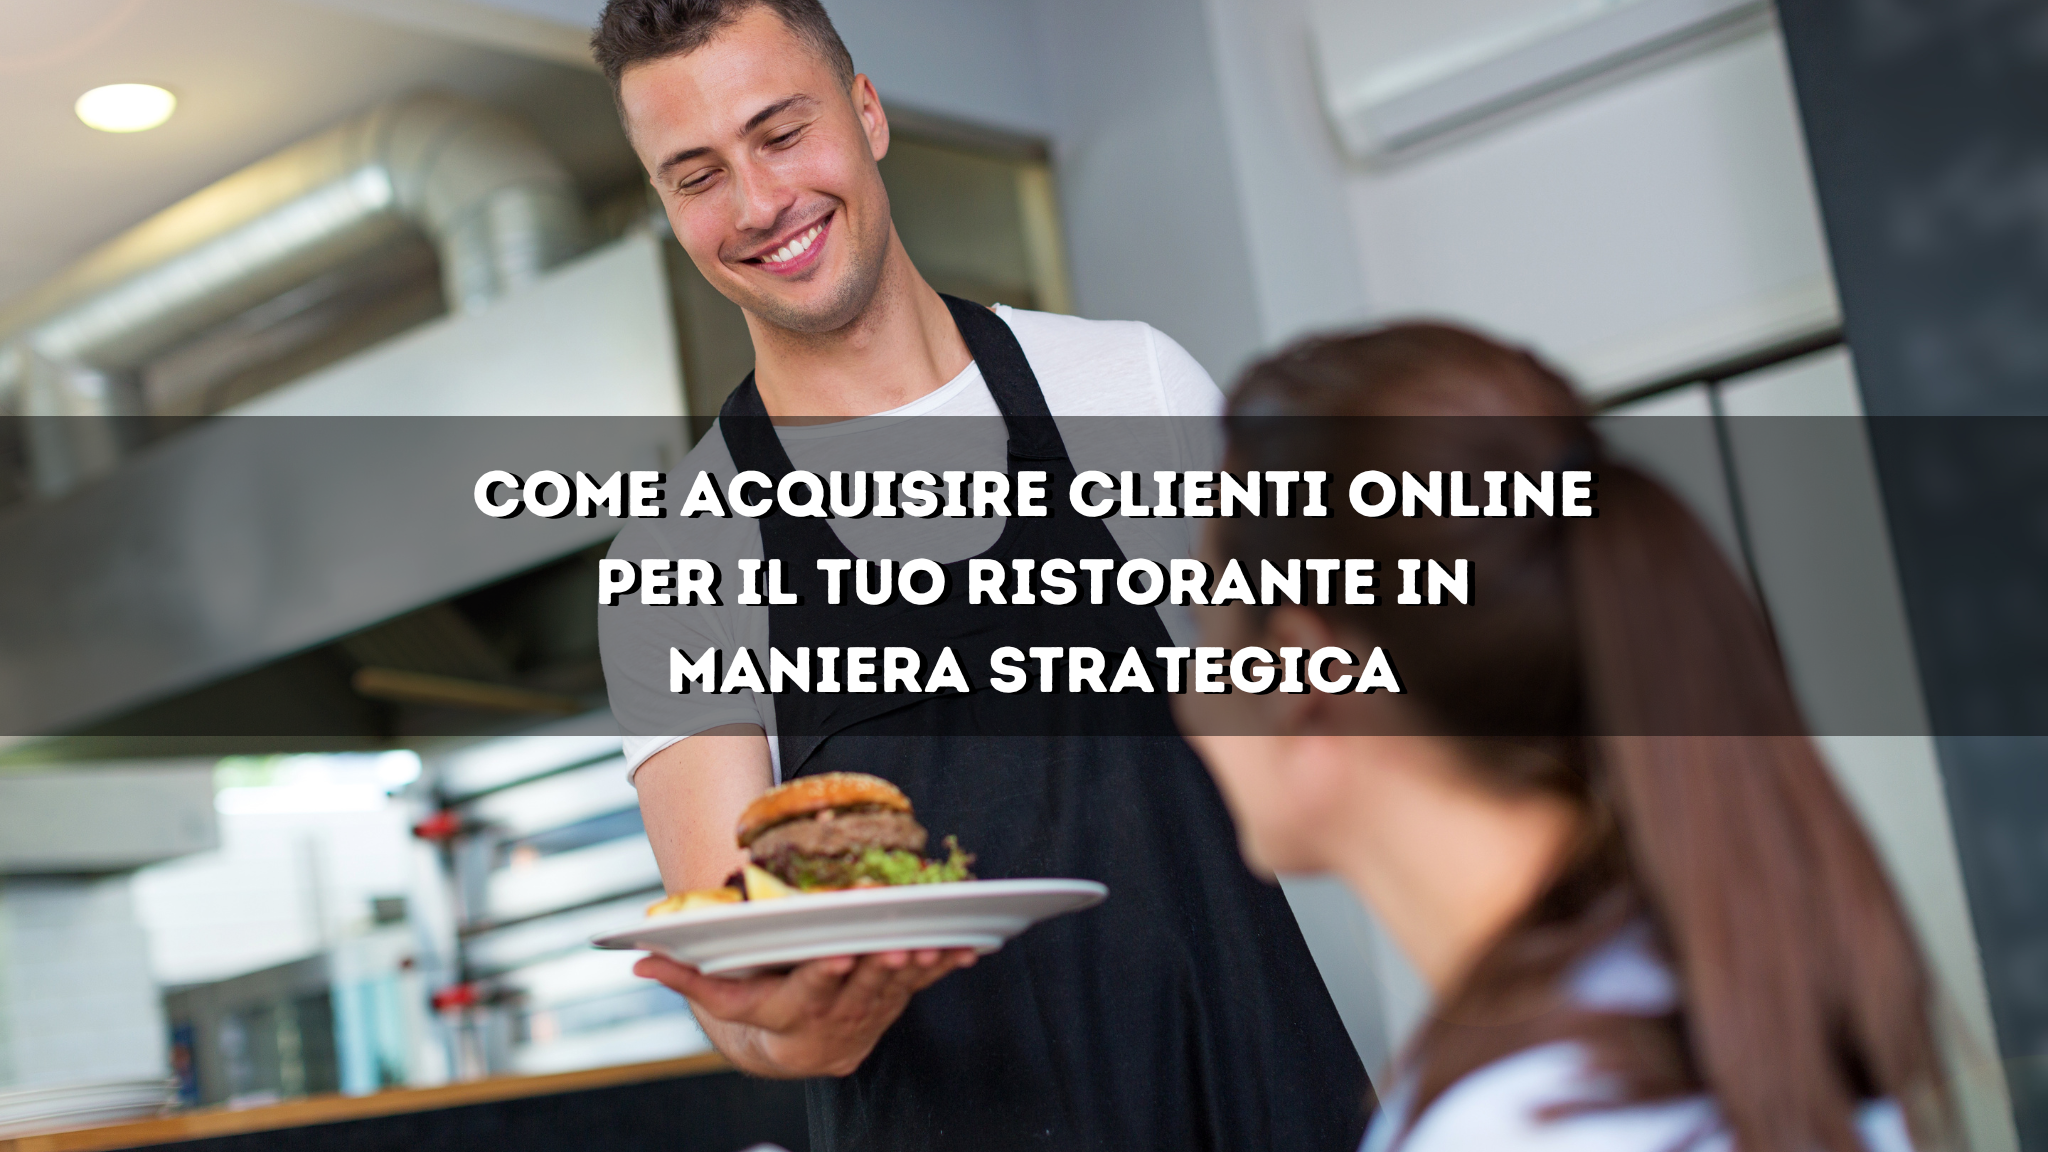 You are currently viewing MARKETING ONLINE PER RISTORANTI | Come acquisire clienti online per il tuo ristorante in maniera strategica